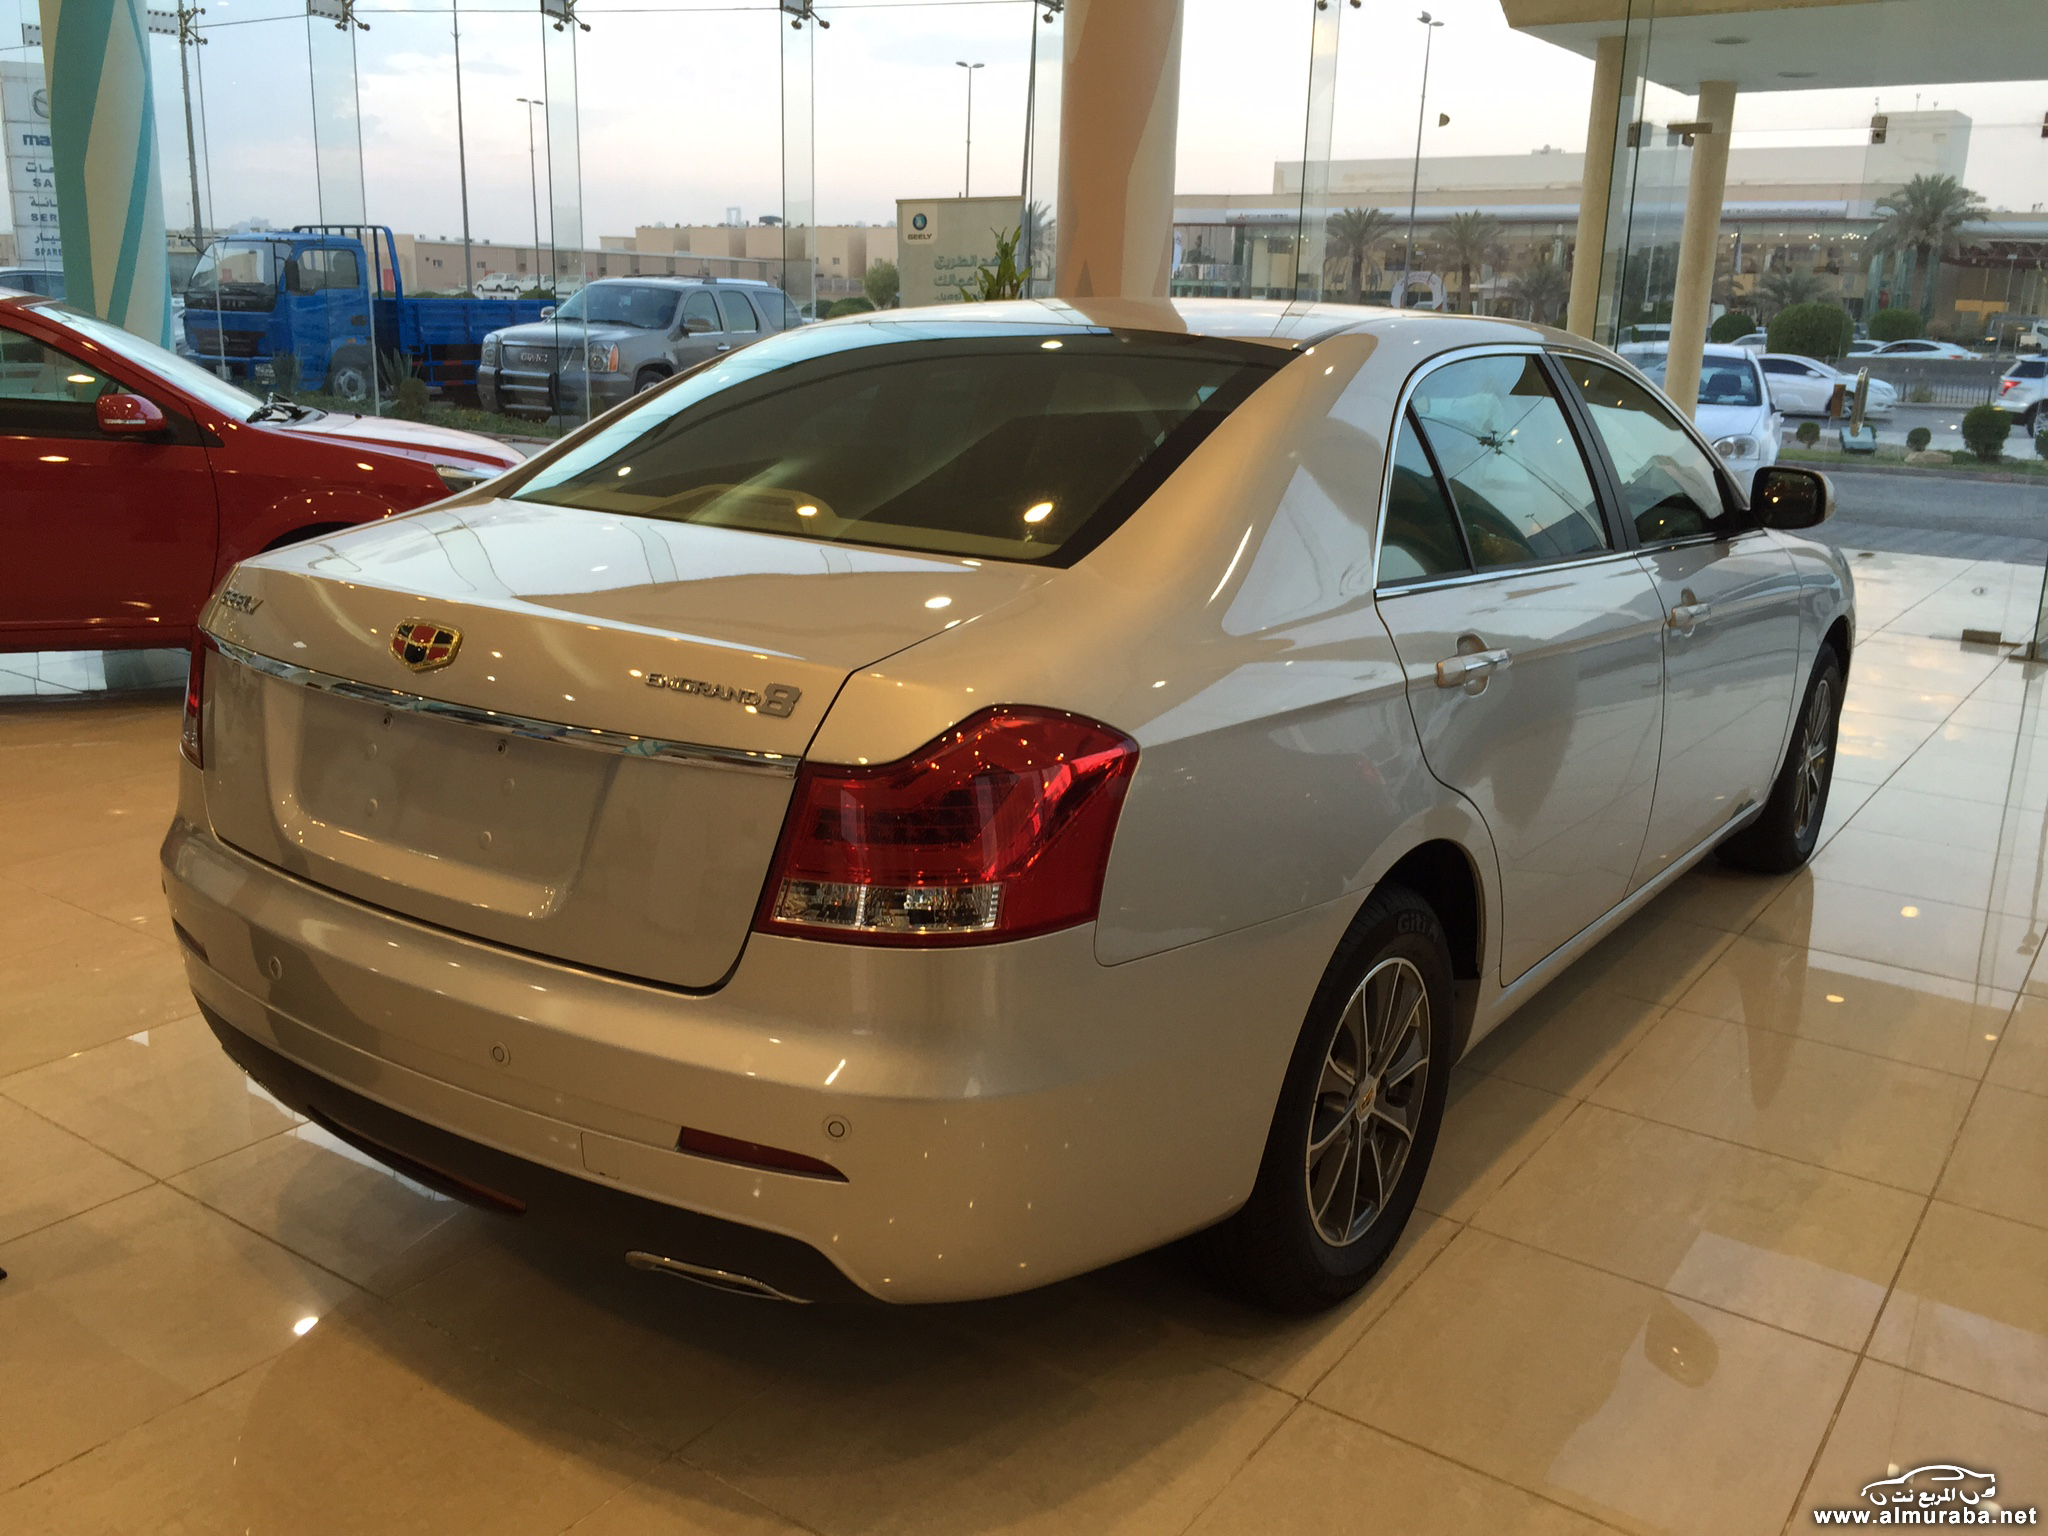 كم سعر سيارة جيلي 2015 للبيع في السعودي ومن أين تشتريها؟ 2